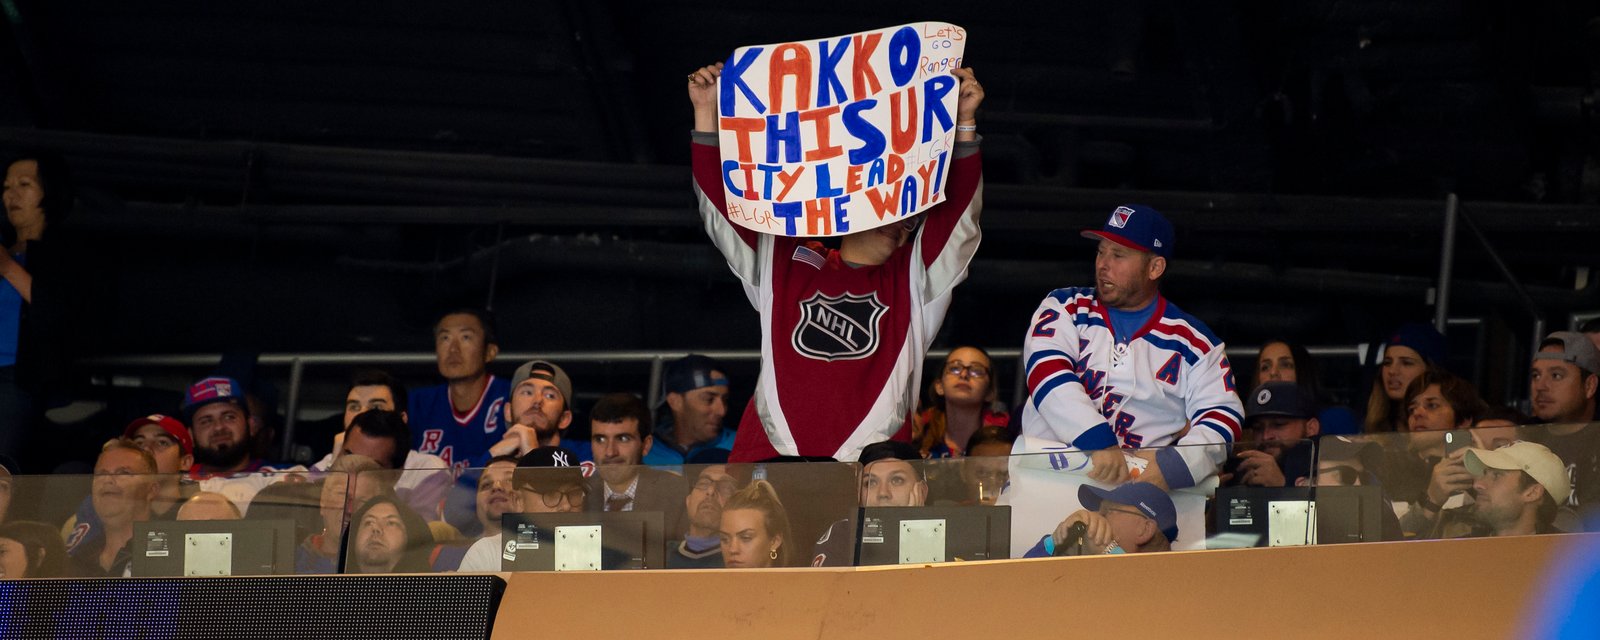 Kaapo Kakko had a special gift for a lucky Rangers fan